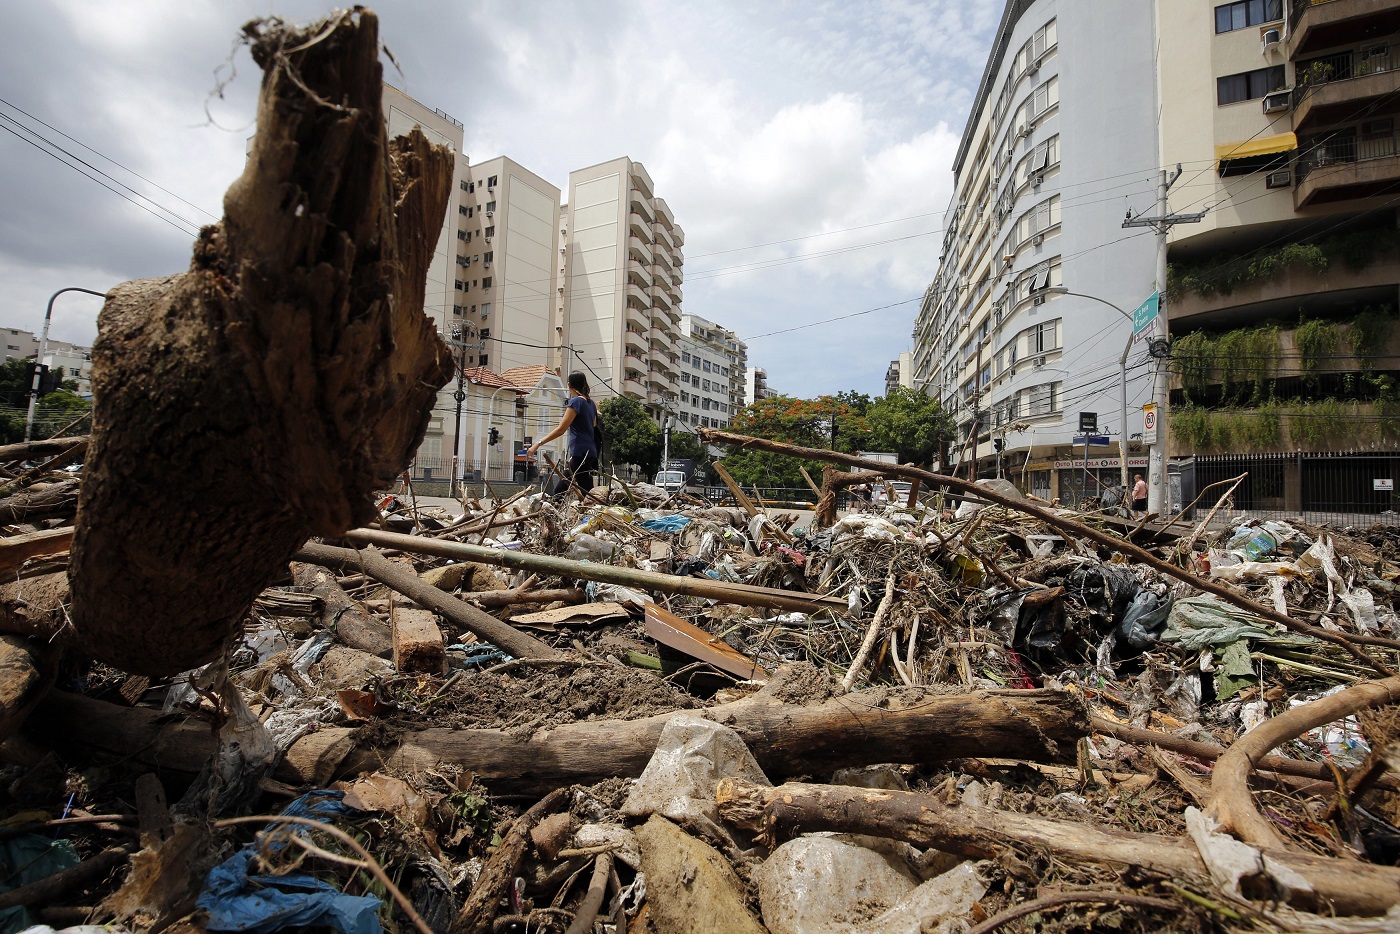 Lixo retirado do Rio Maracanã, no último dia 15, na esquina da Avenida Maracanã com a Rua Uruguai, na Tijuca. Foto Marcos de Paula /Agência O Globo